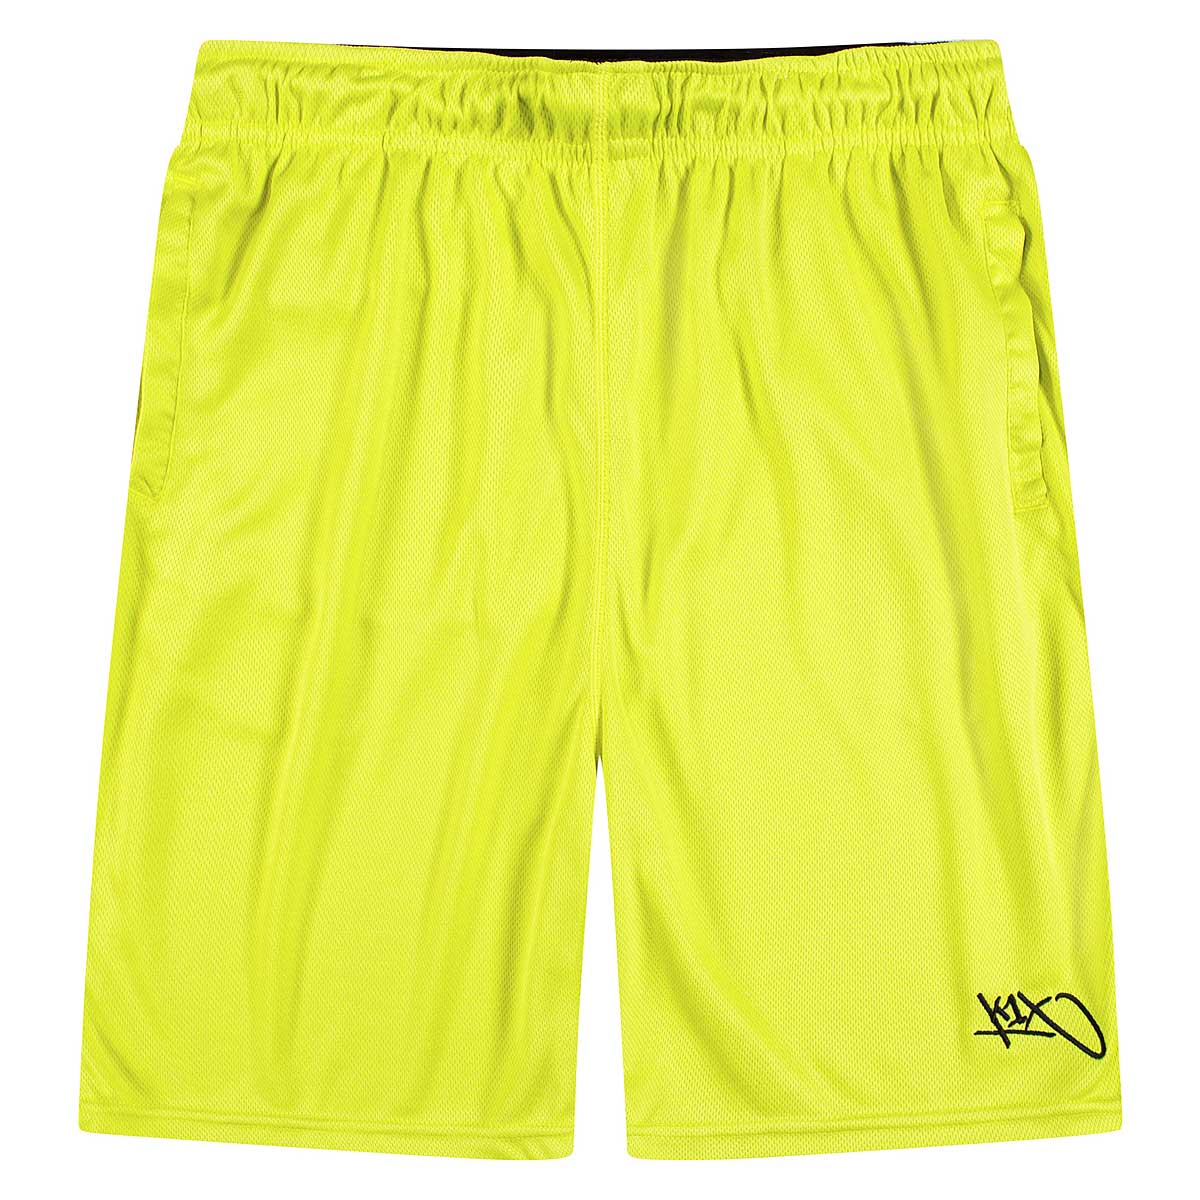 K1X New Micromesh Shorts, Volt